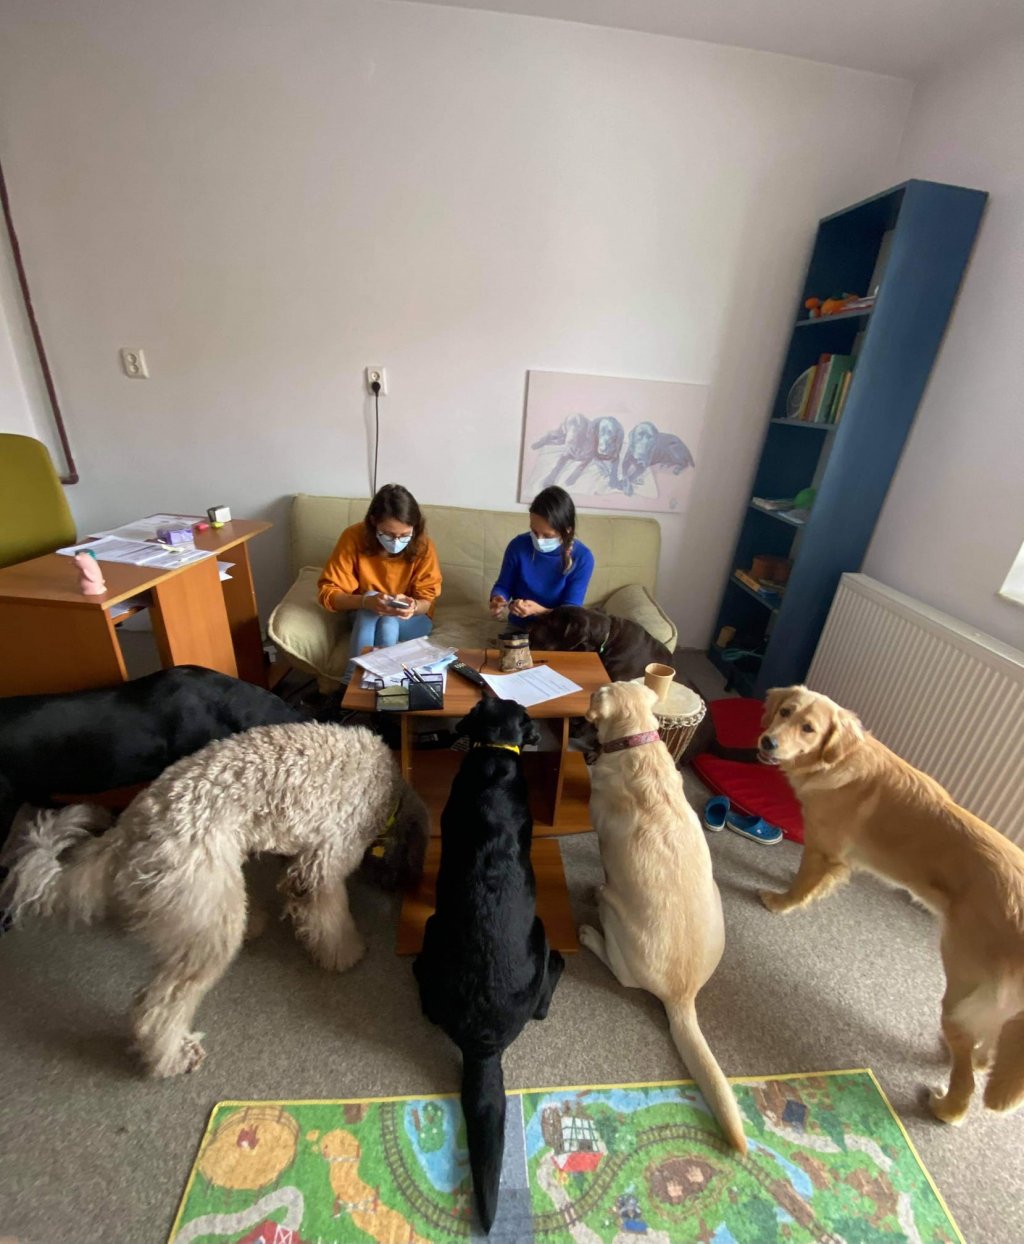 Asociaţia din Cluj, care face terapie asistată de câini, caută sediu nou: "Ne dorim un spațiu la care sa nu crească chiria la fiecare 2 ani cu sute de euro''